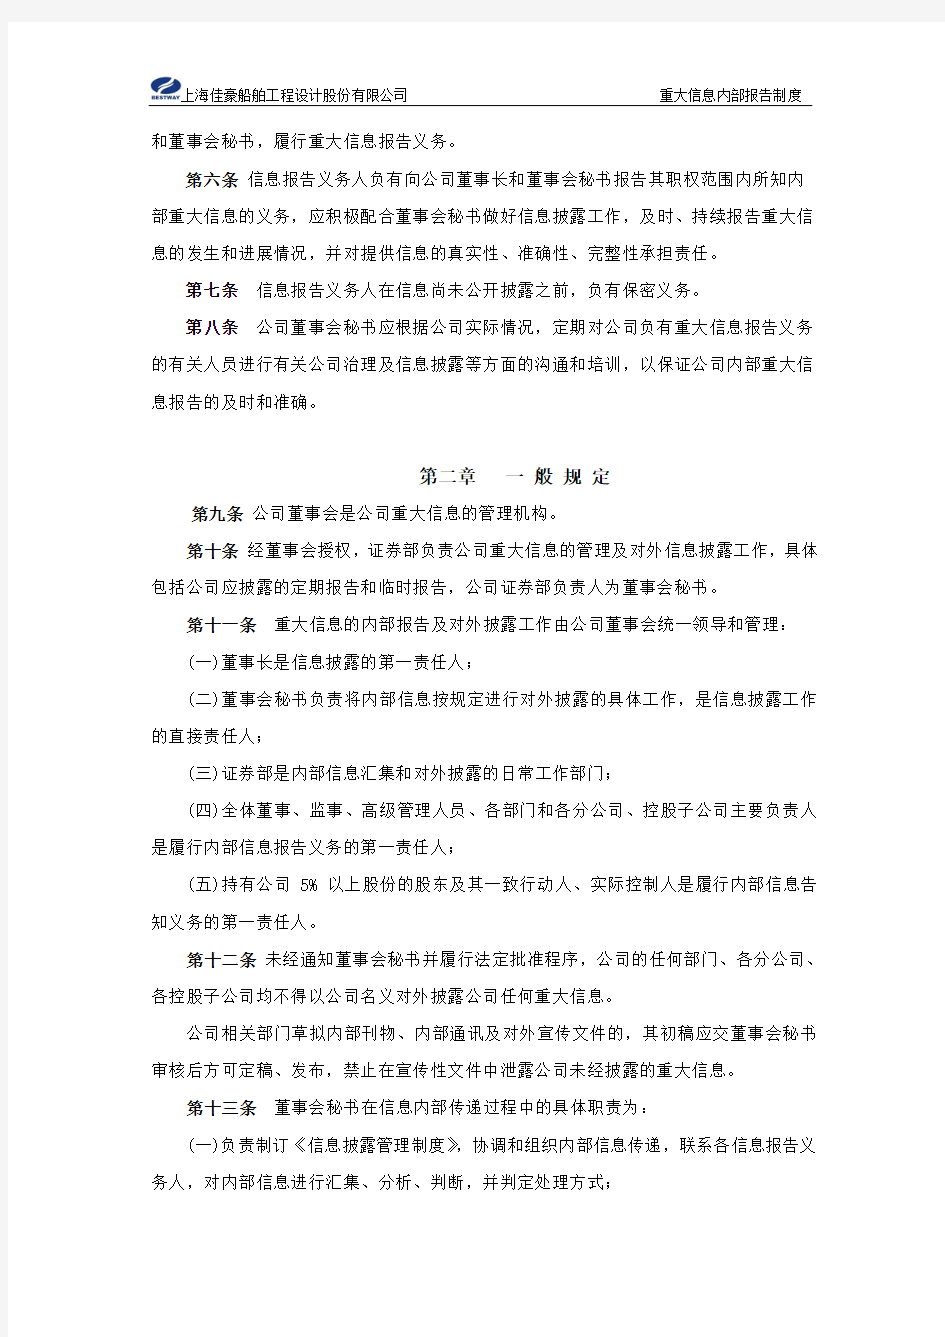 上海佳豪：重大信息内部报告制度(2010年2月) 2010-02-09